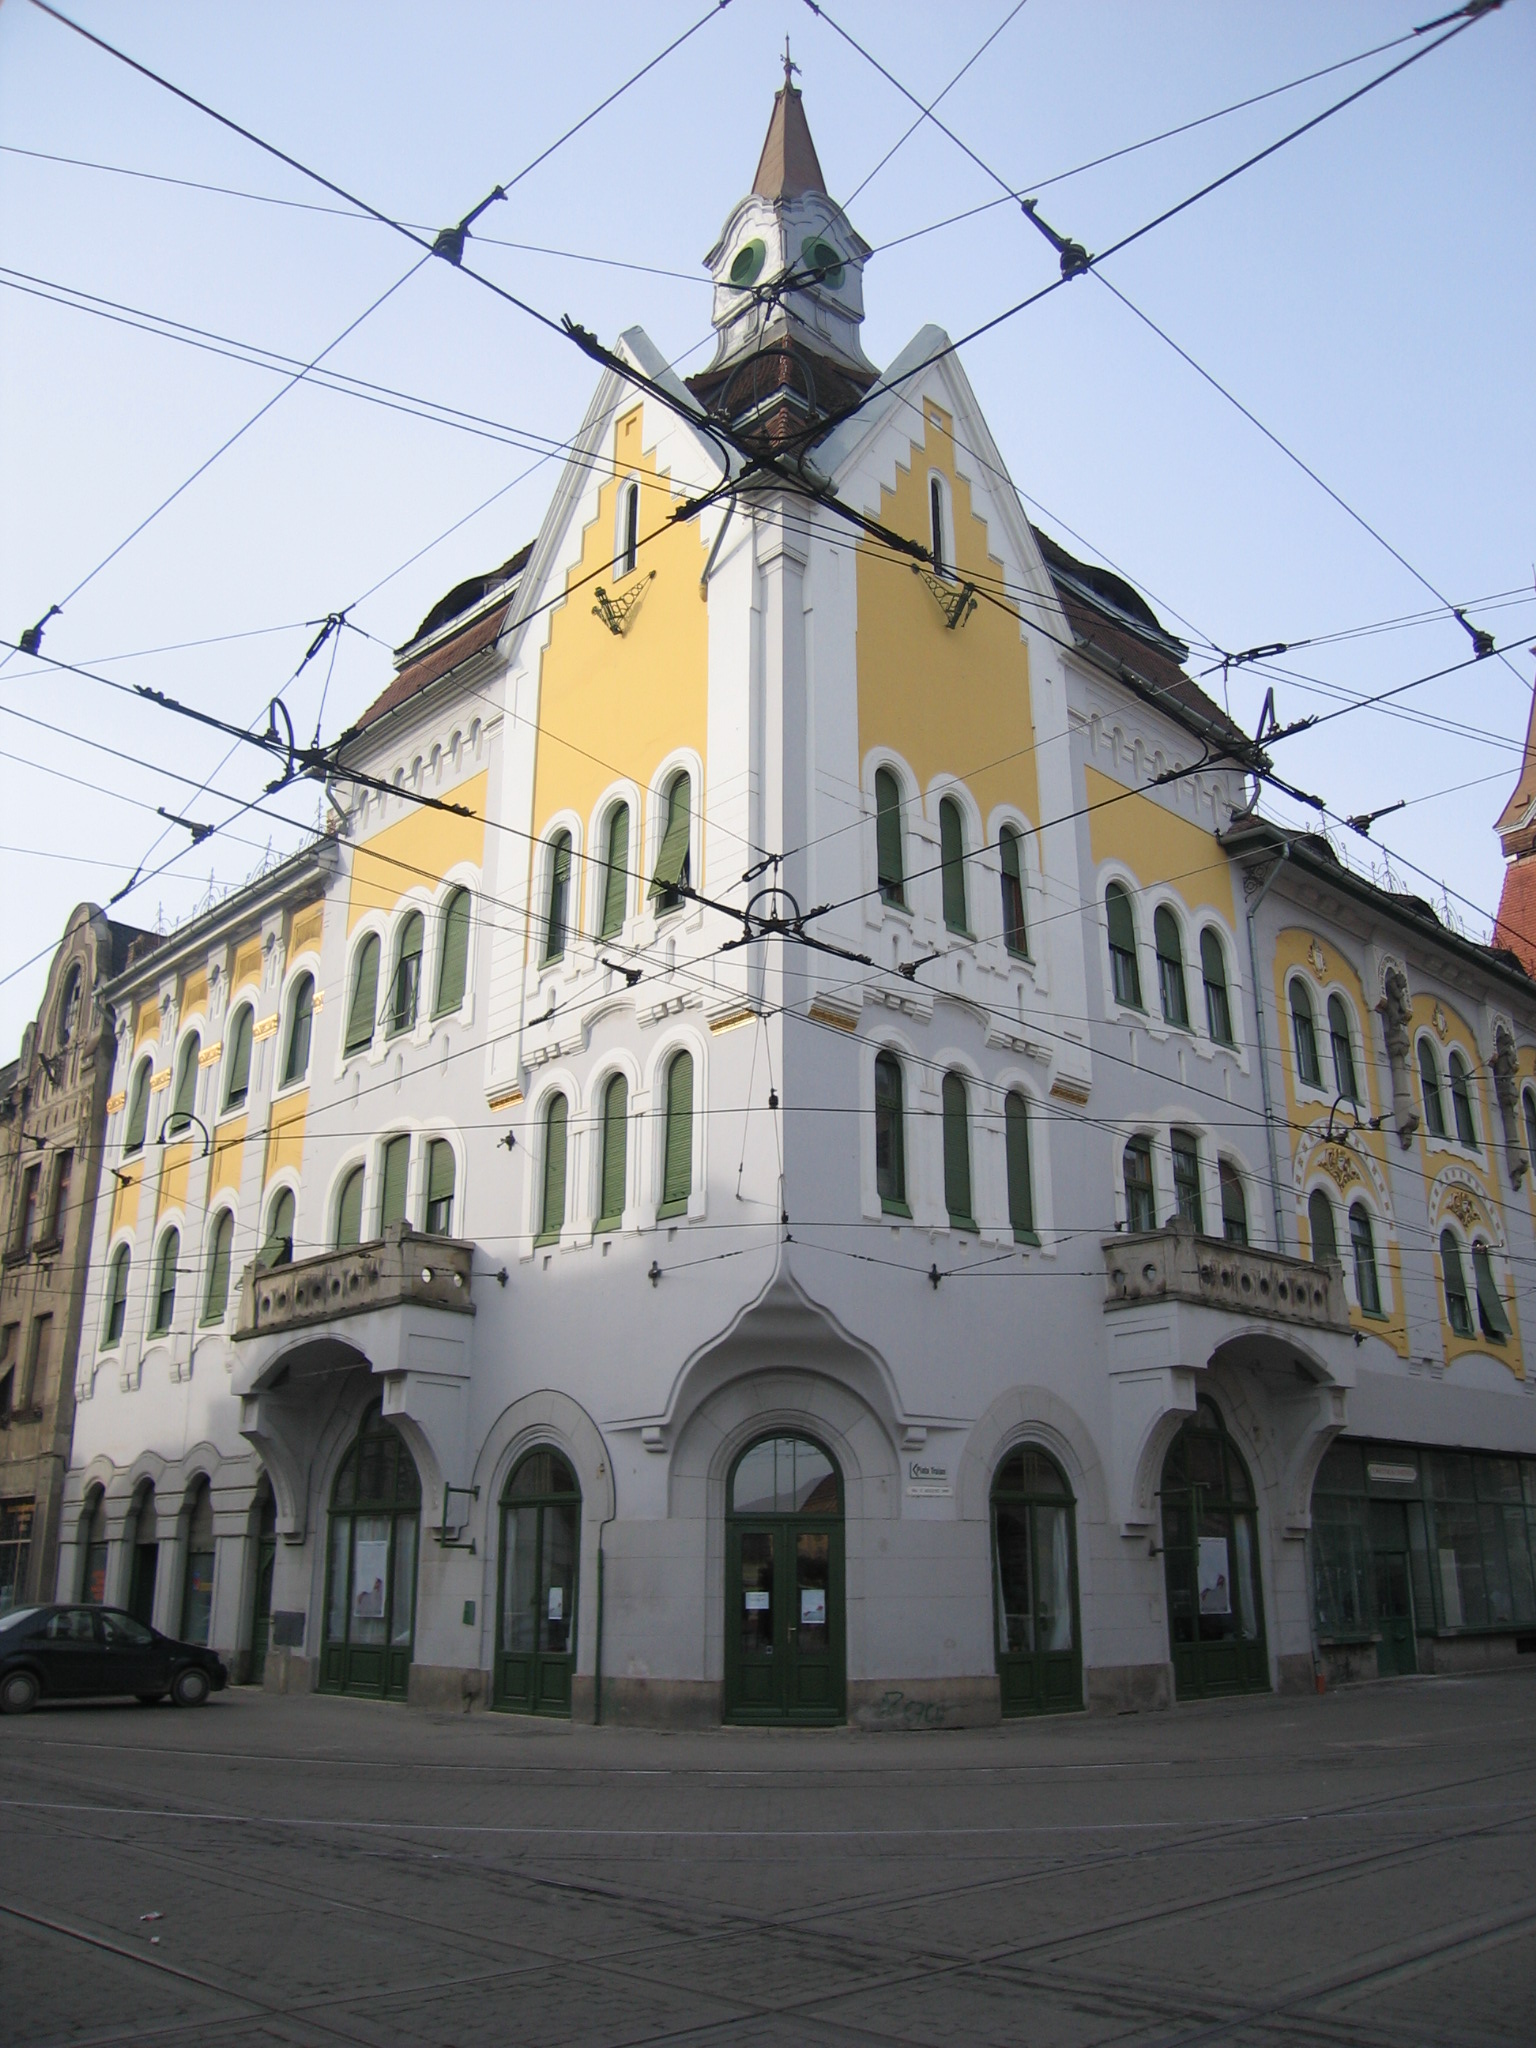 Se modifică programul de reabilitare a clădirilor istorice cu sprijin de la Primăria Timișoara